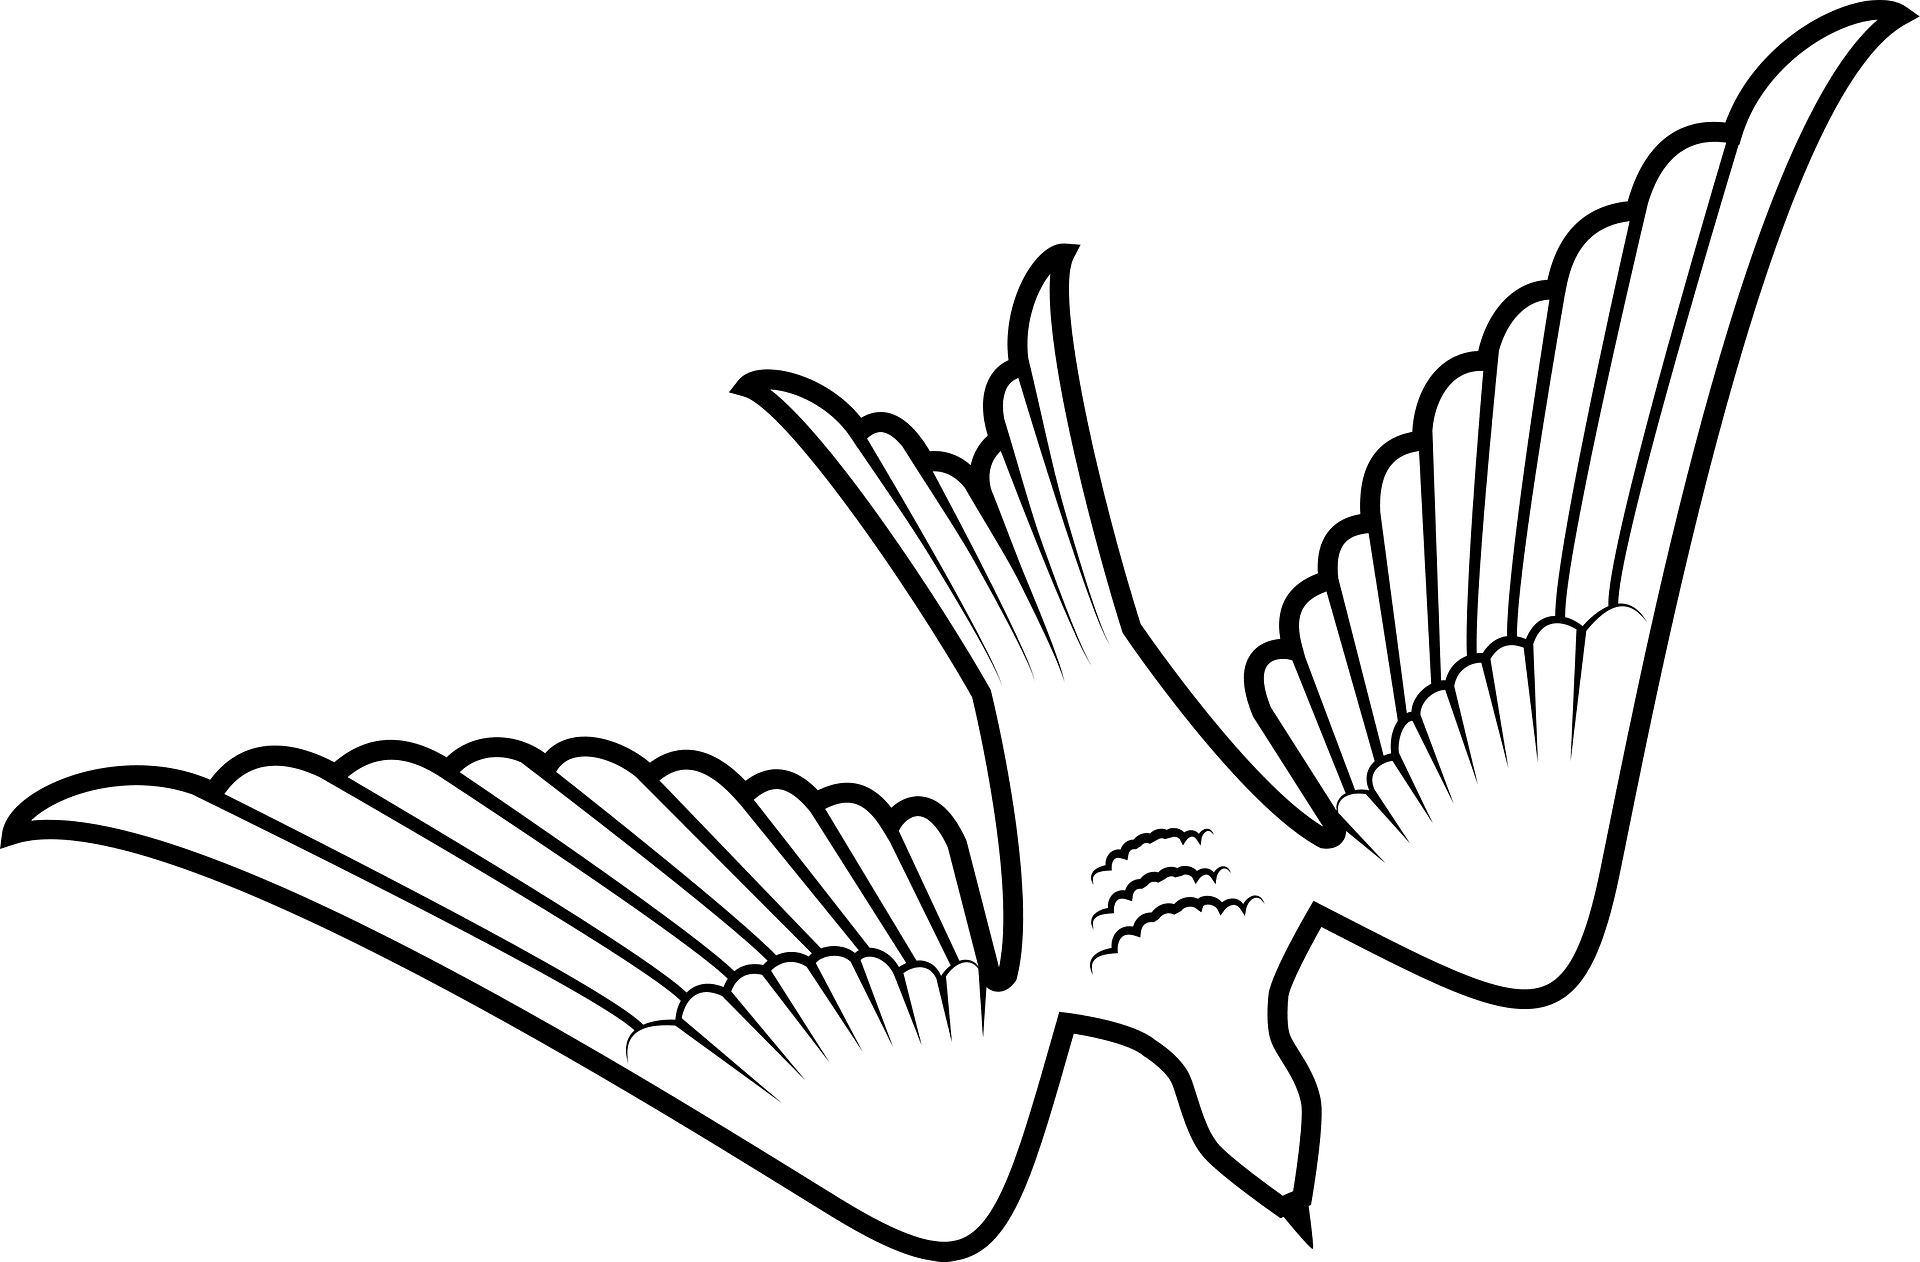 Dibujo para colorear de una paloma